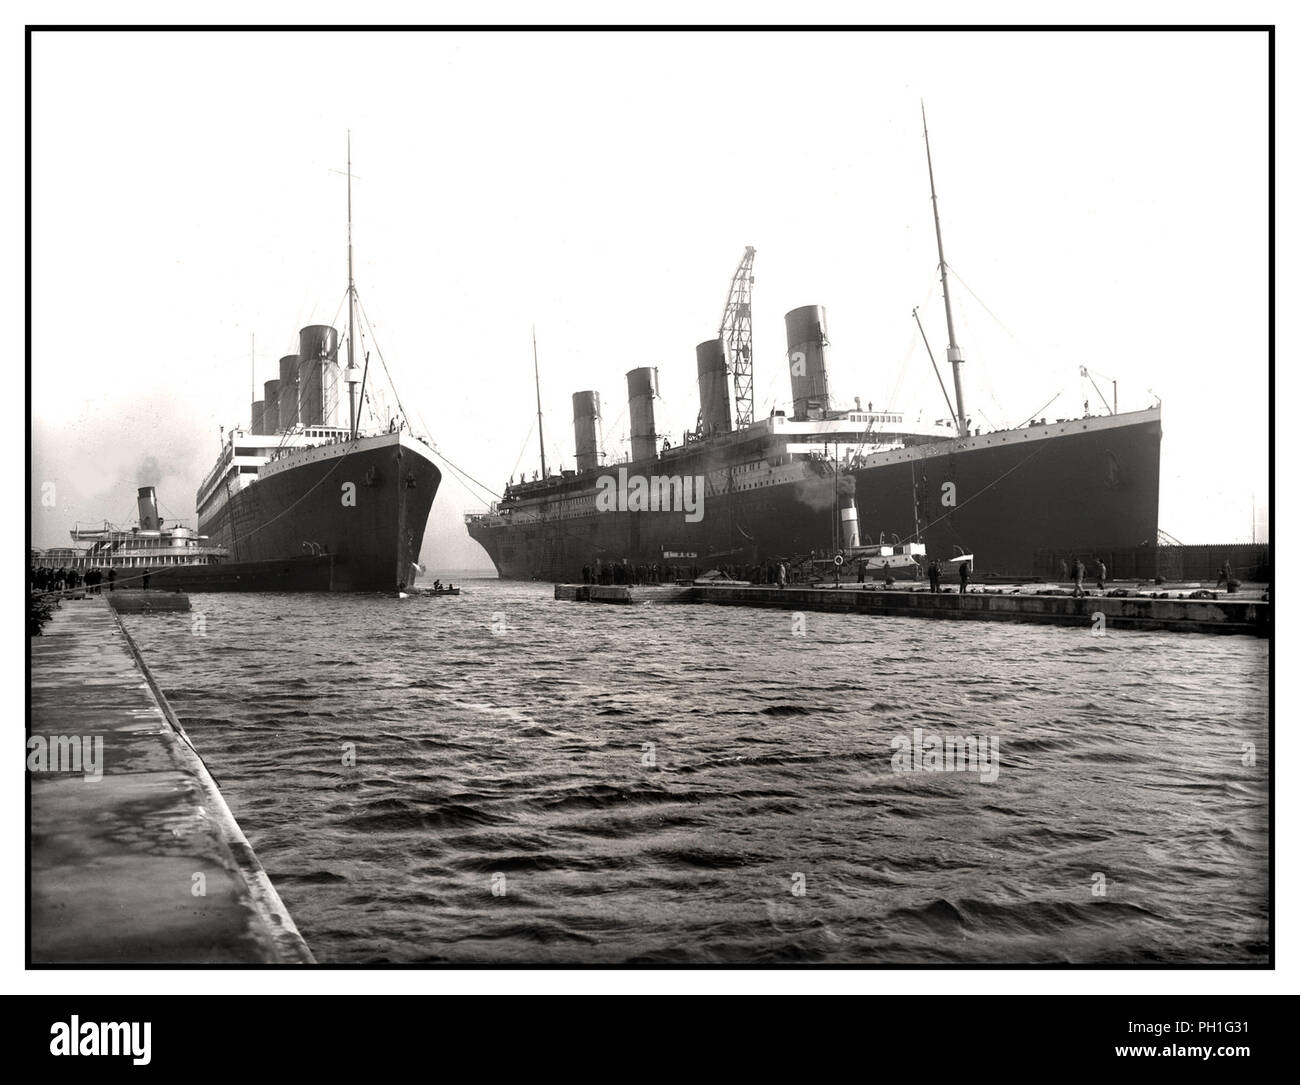 TITANIC & OLYMPIC Sister Ocean liners Vintage B&W RMS Olympic entrant dans le port d'amarrage de Belfast avec RMS Titanic en préparation finale le 1912 mars, pour son voyage fatidique de jeune fille le 14th avril 1912 Banque D'Images